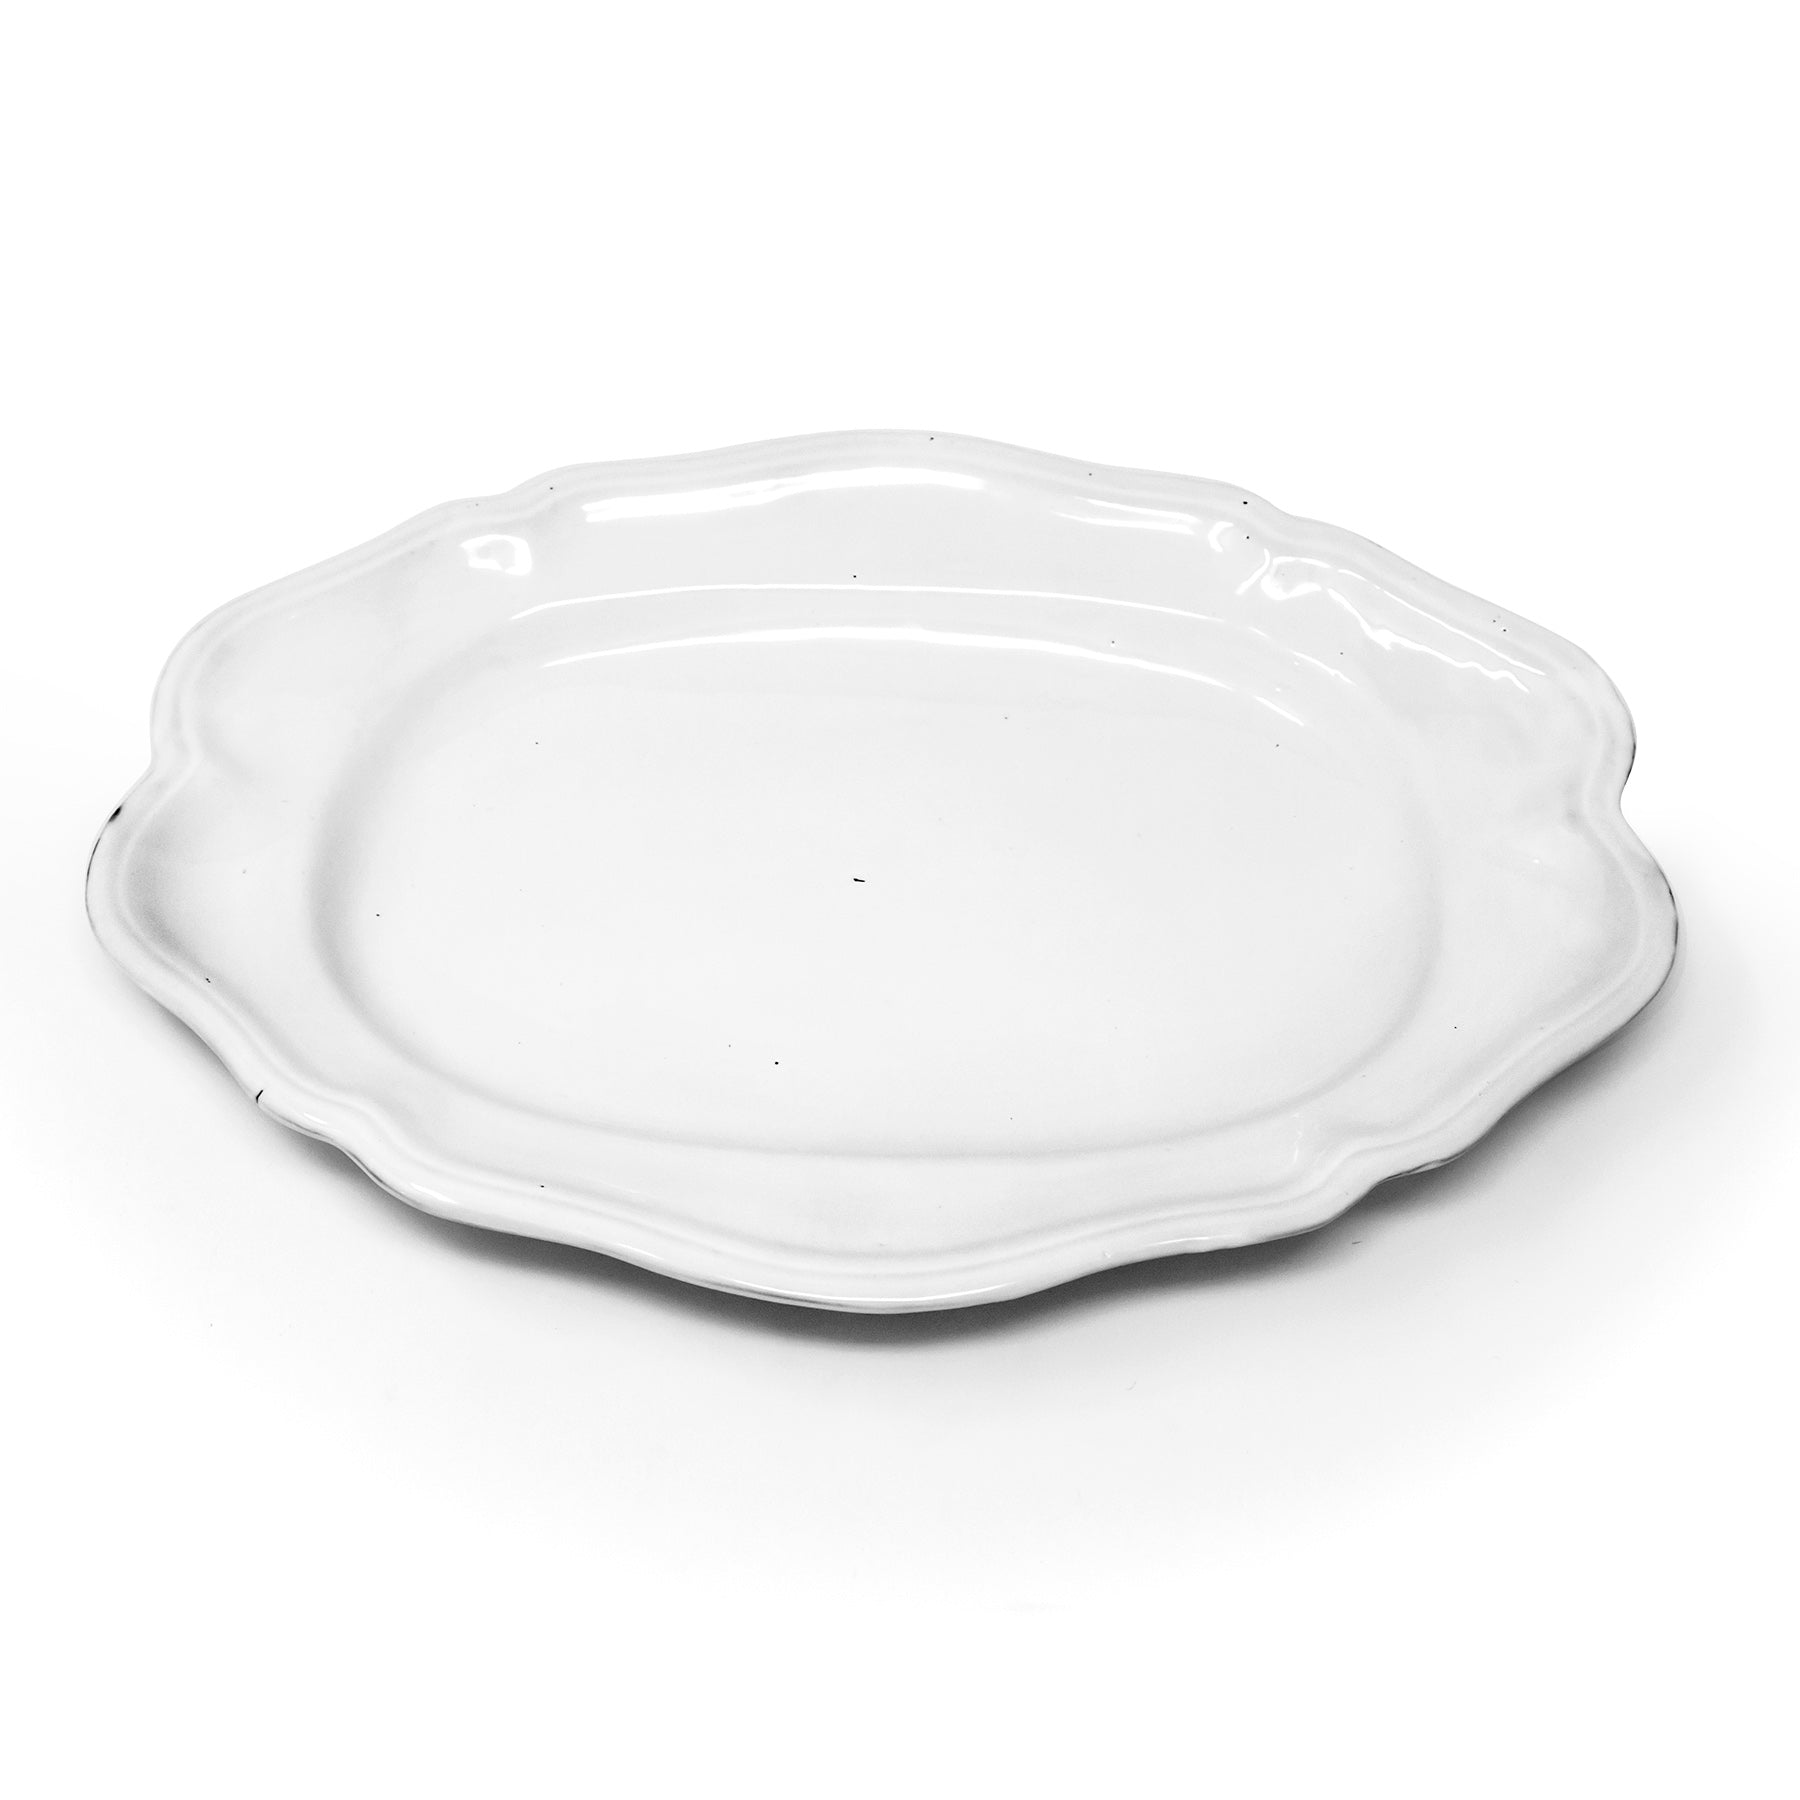 Handmade white ceramic platters